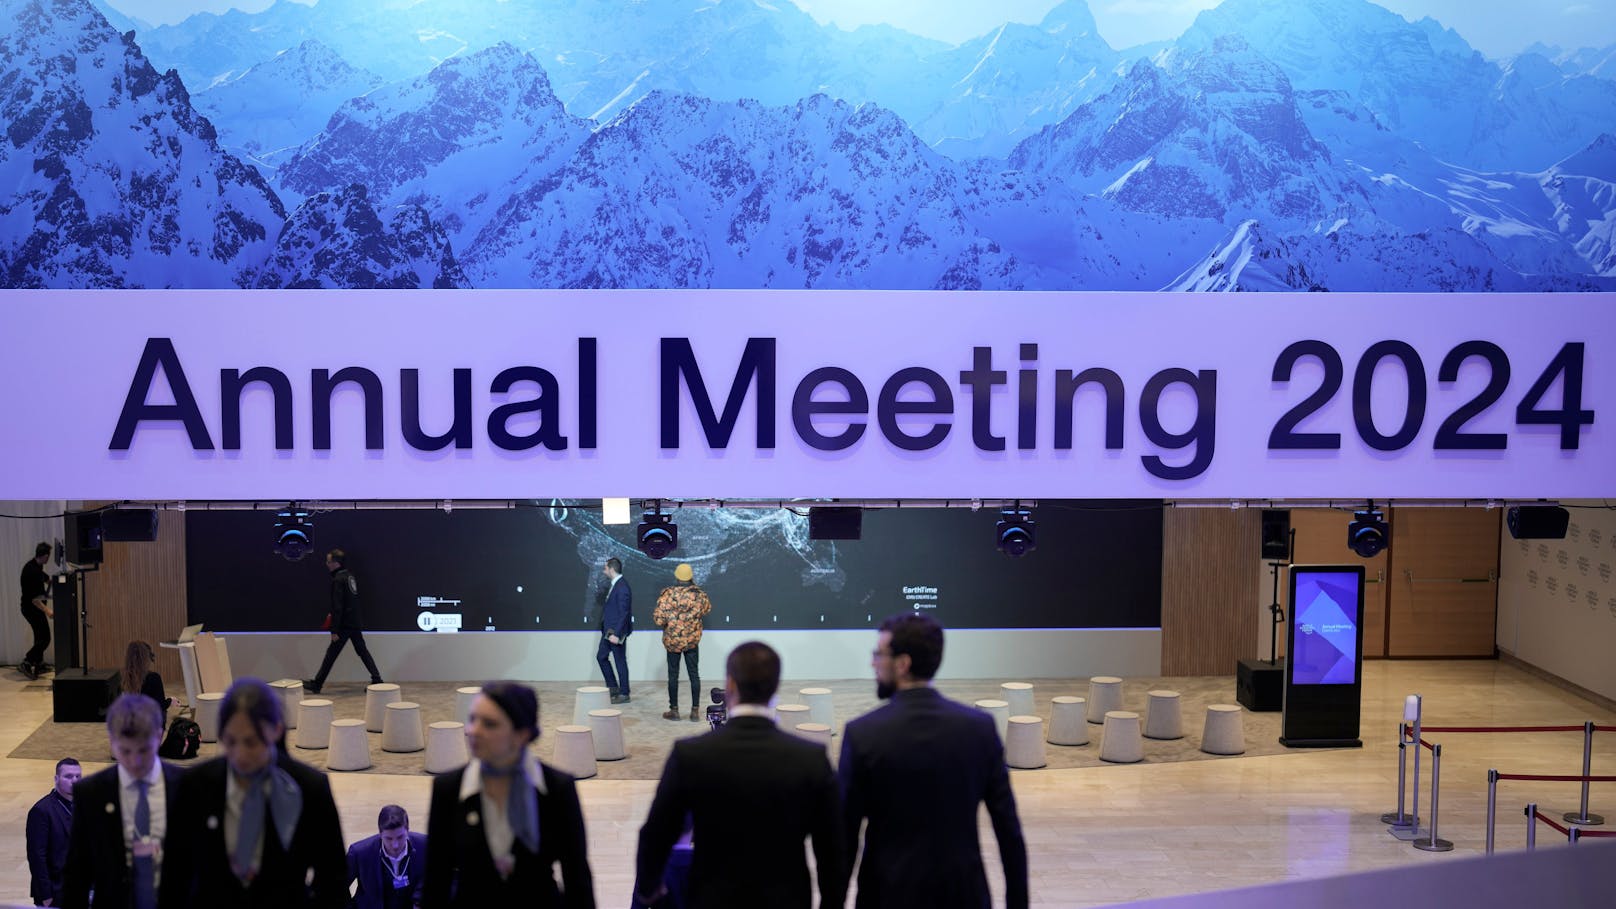 Weltwirtschaftsforum in Davos: Escorts schon ausgebucht